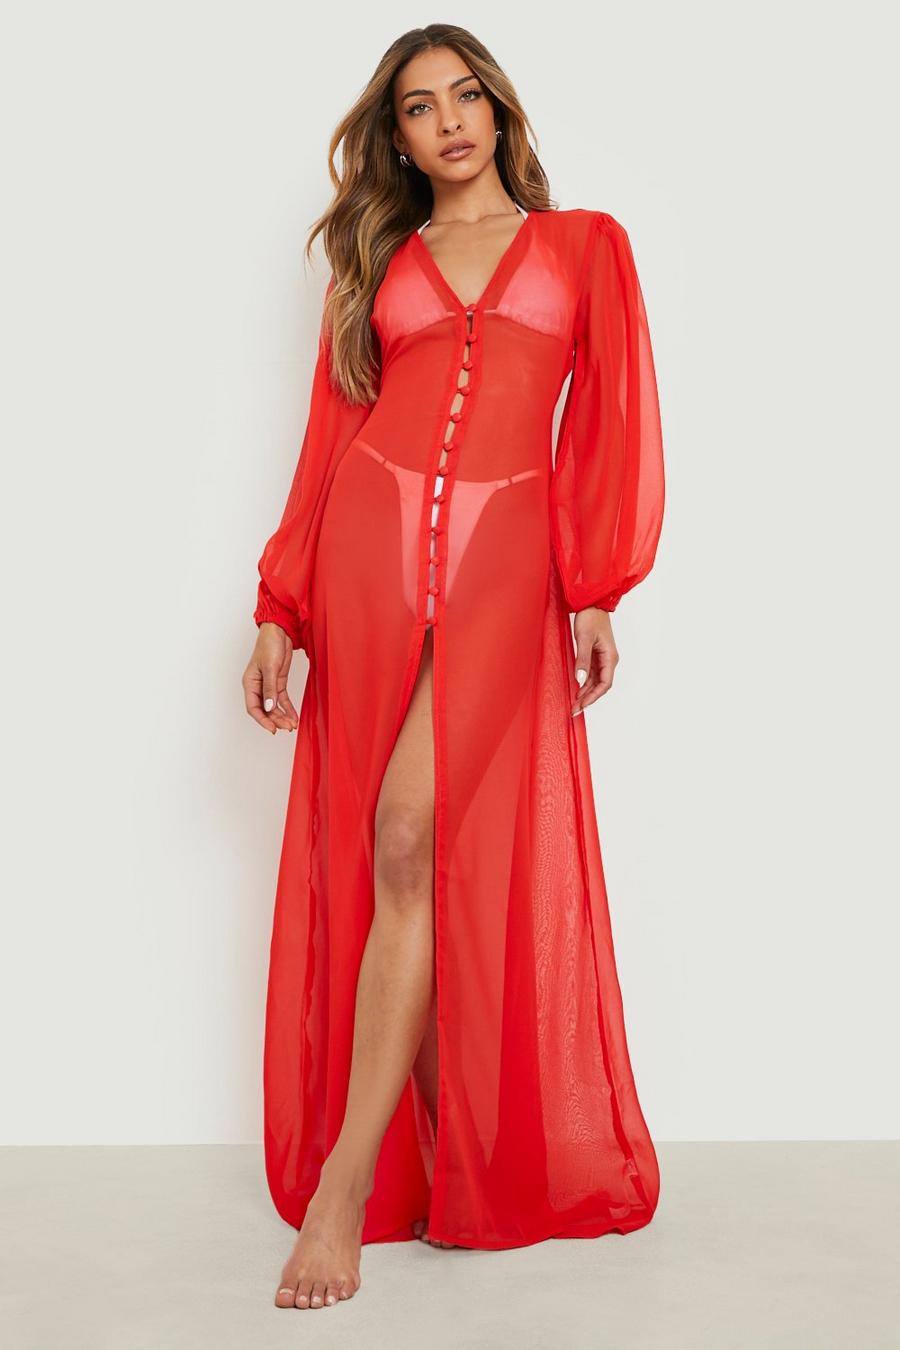 אדום rosso שמלת חוף מבד שיפון עם כפתורים ושרוולי בלון